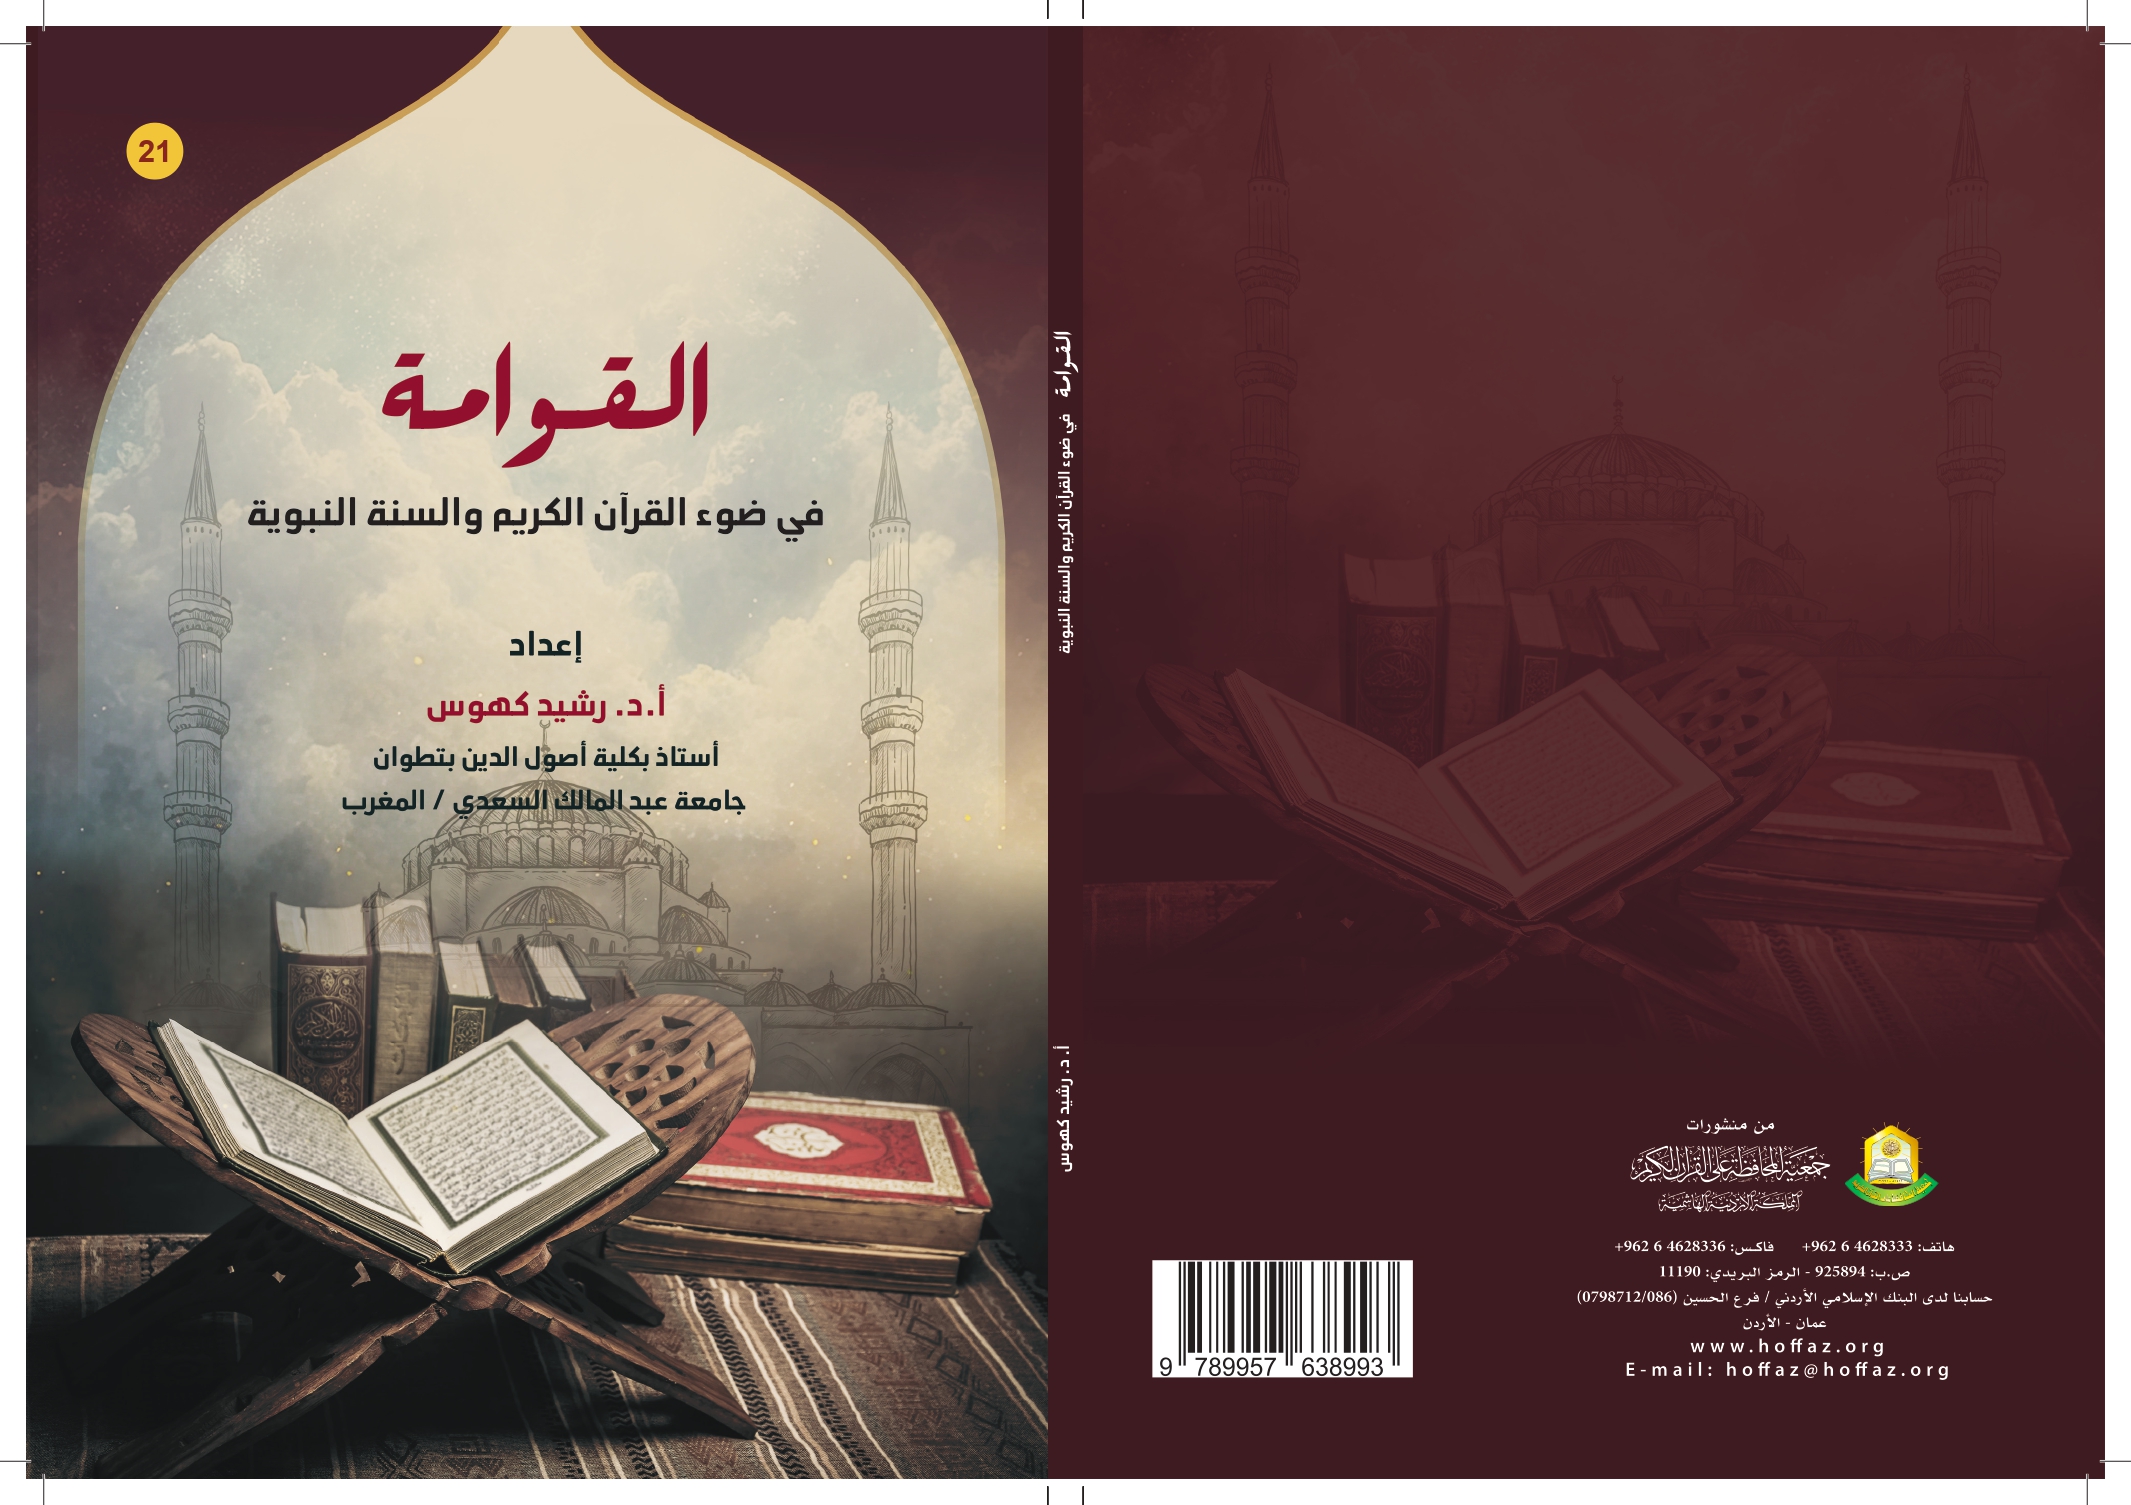 صدور الطبعة الثانية من كتاب: القوامة في القرآن الكريم والسنة النبوية